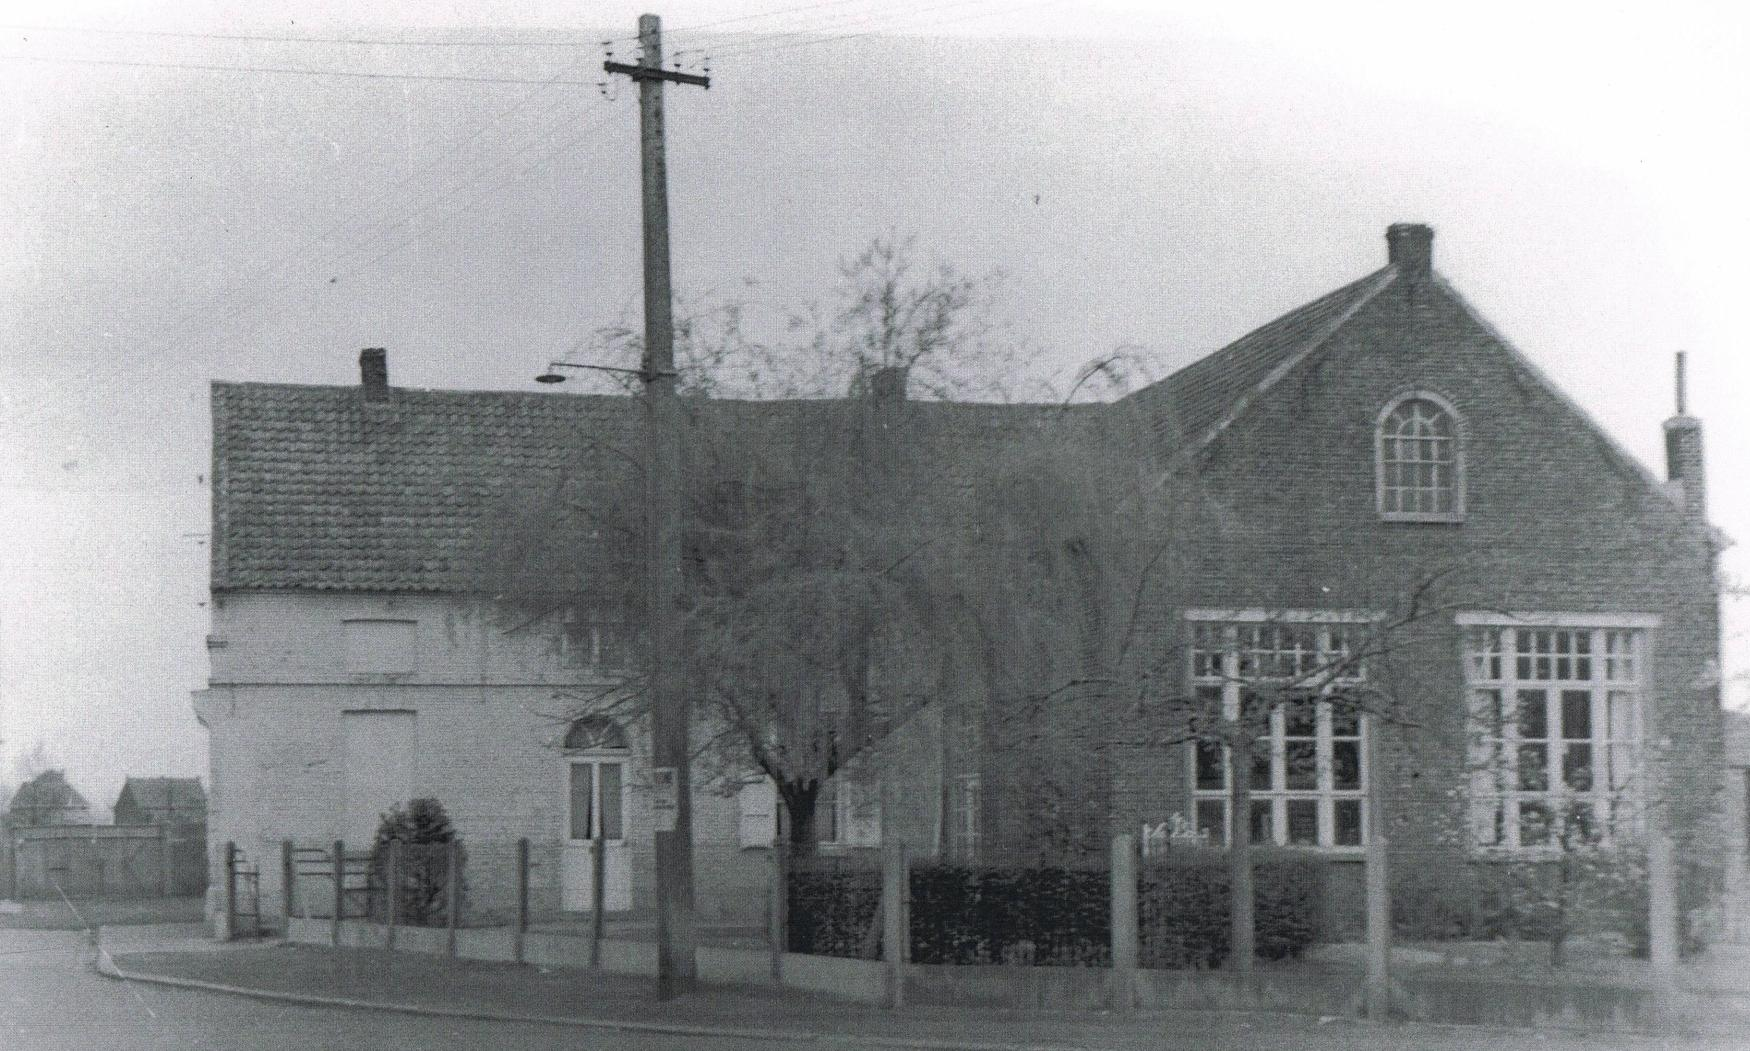 Illustratie 2. Postkaart met zicht op een deel van het schoolgebouw (rechts) en de woningen in de onmiddellijke omgeving. Periode interbellum.